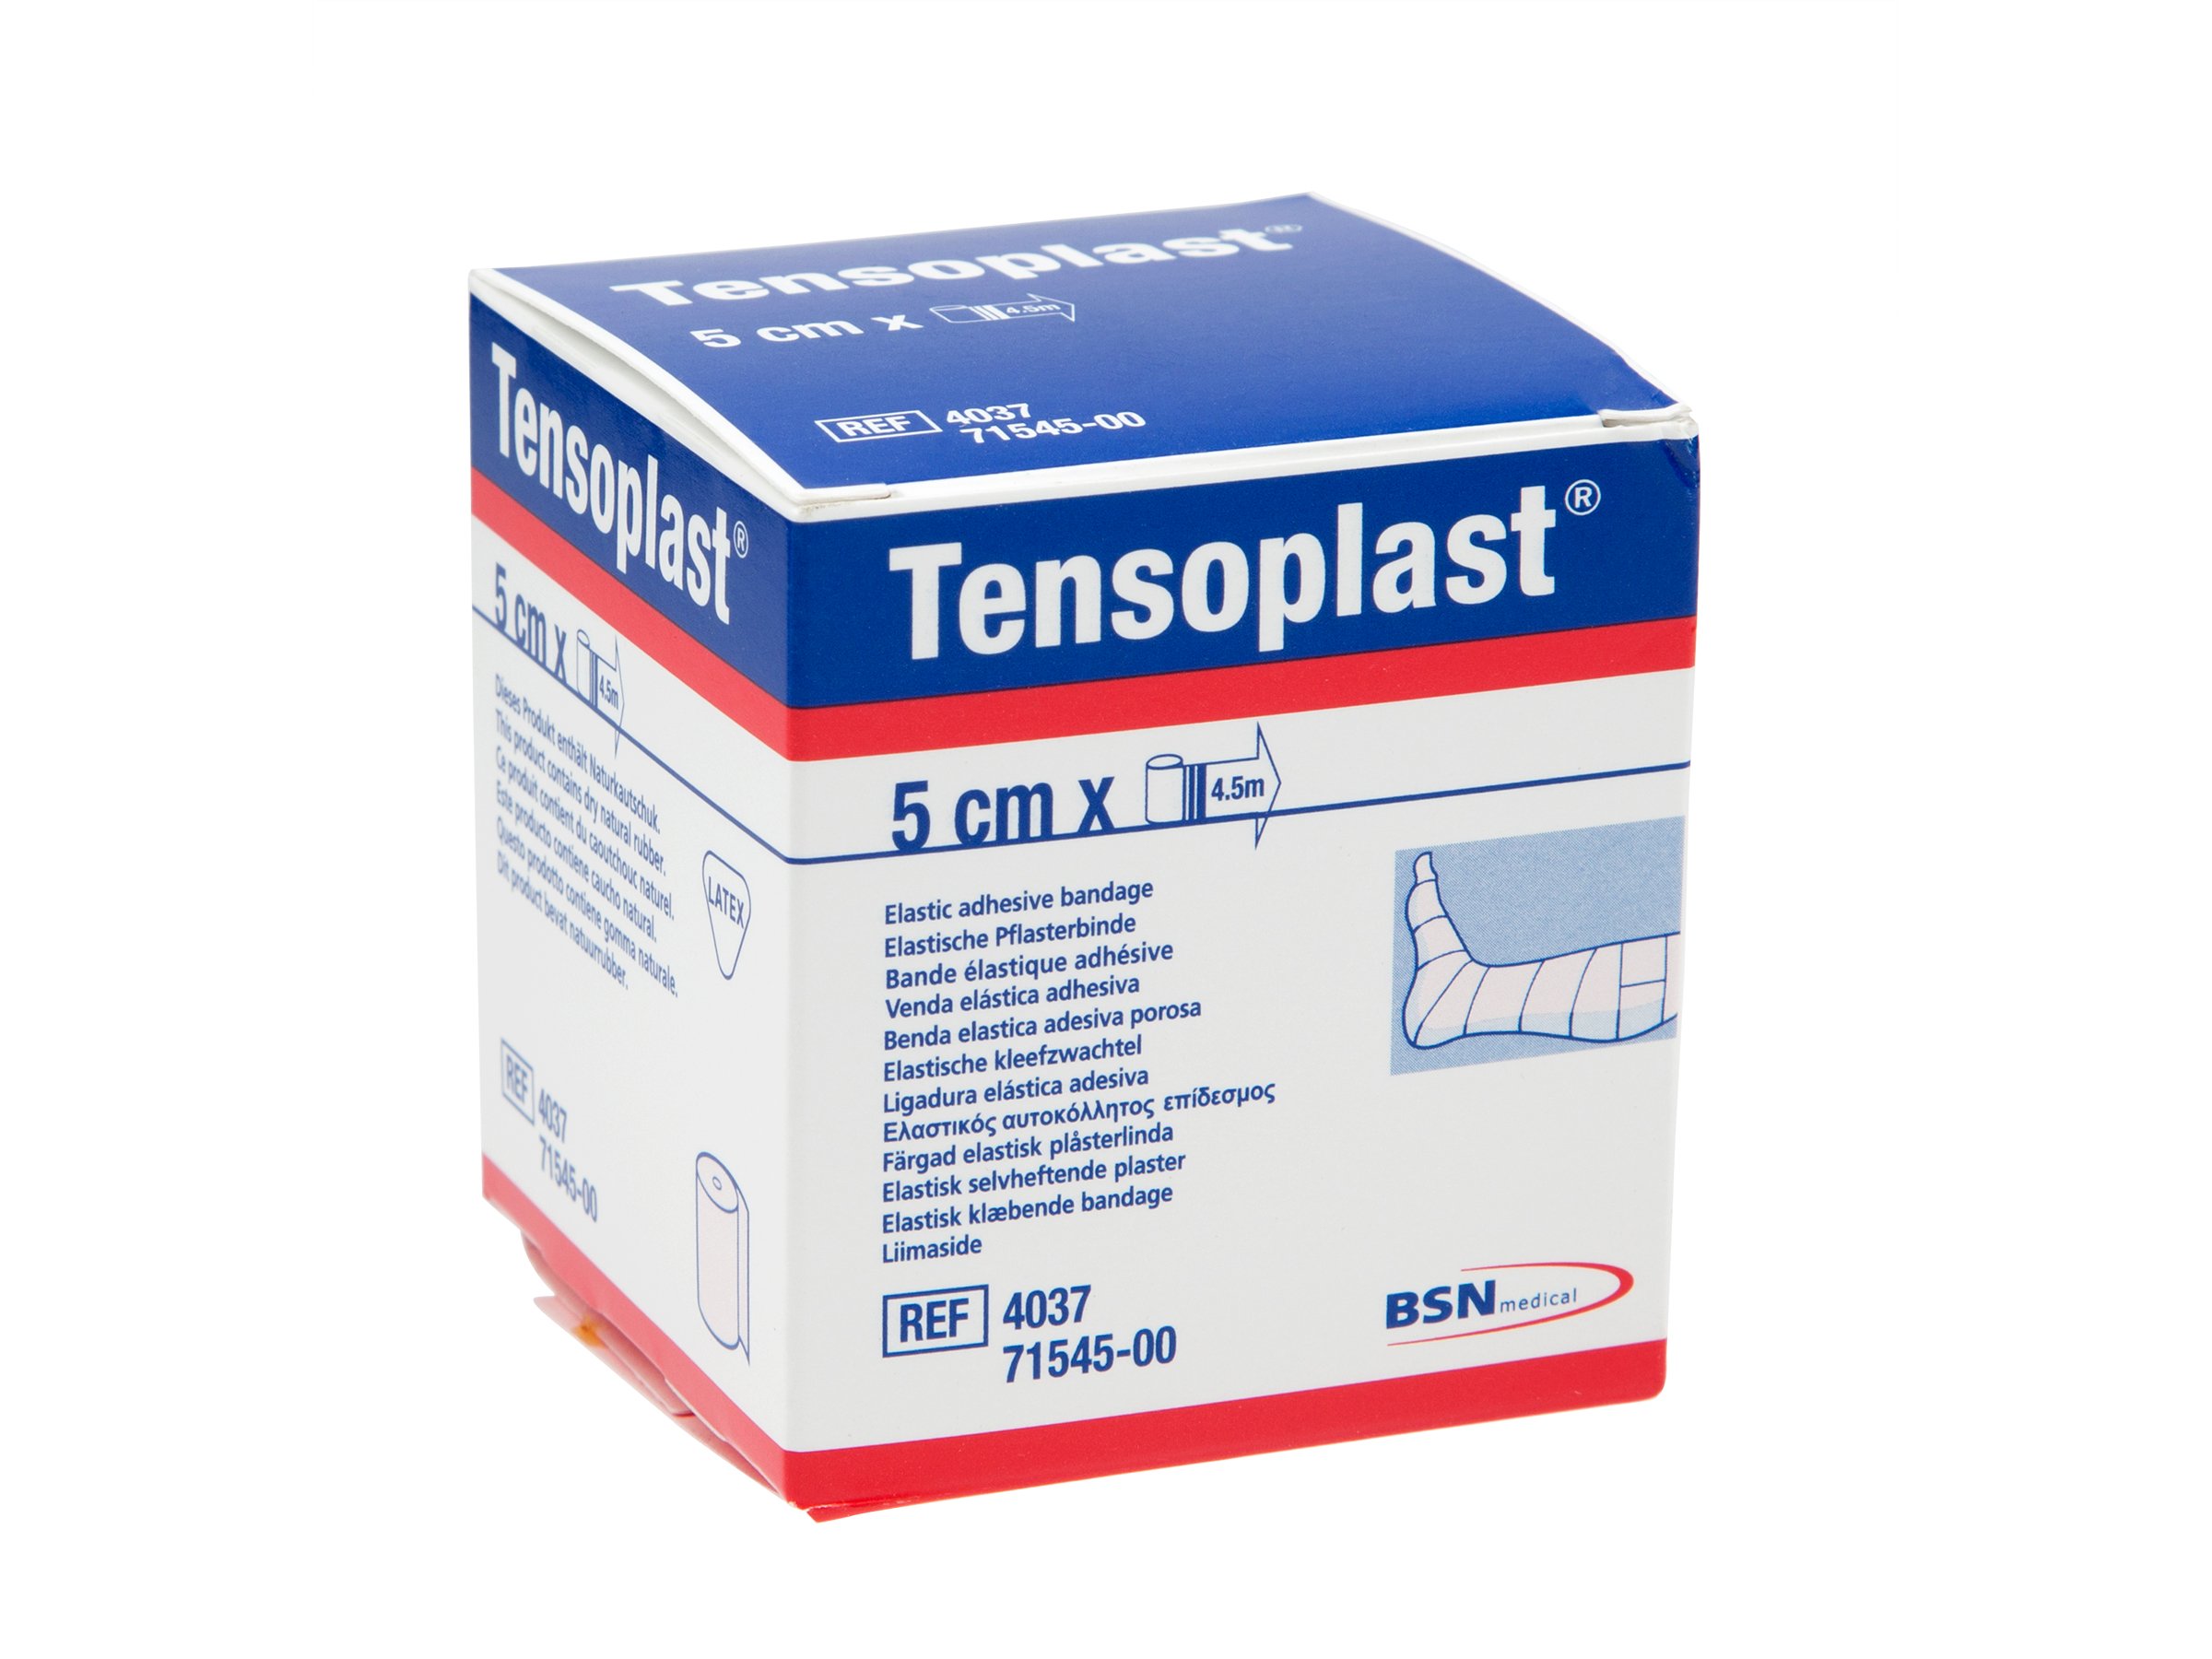 Tensoplast 5,0 cm x 4,5 m, 1 stk